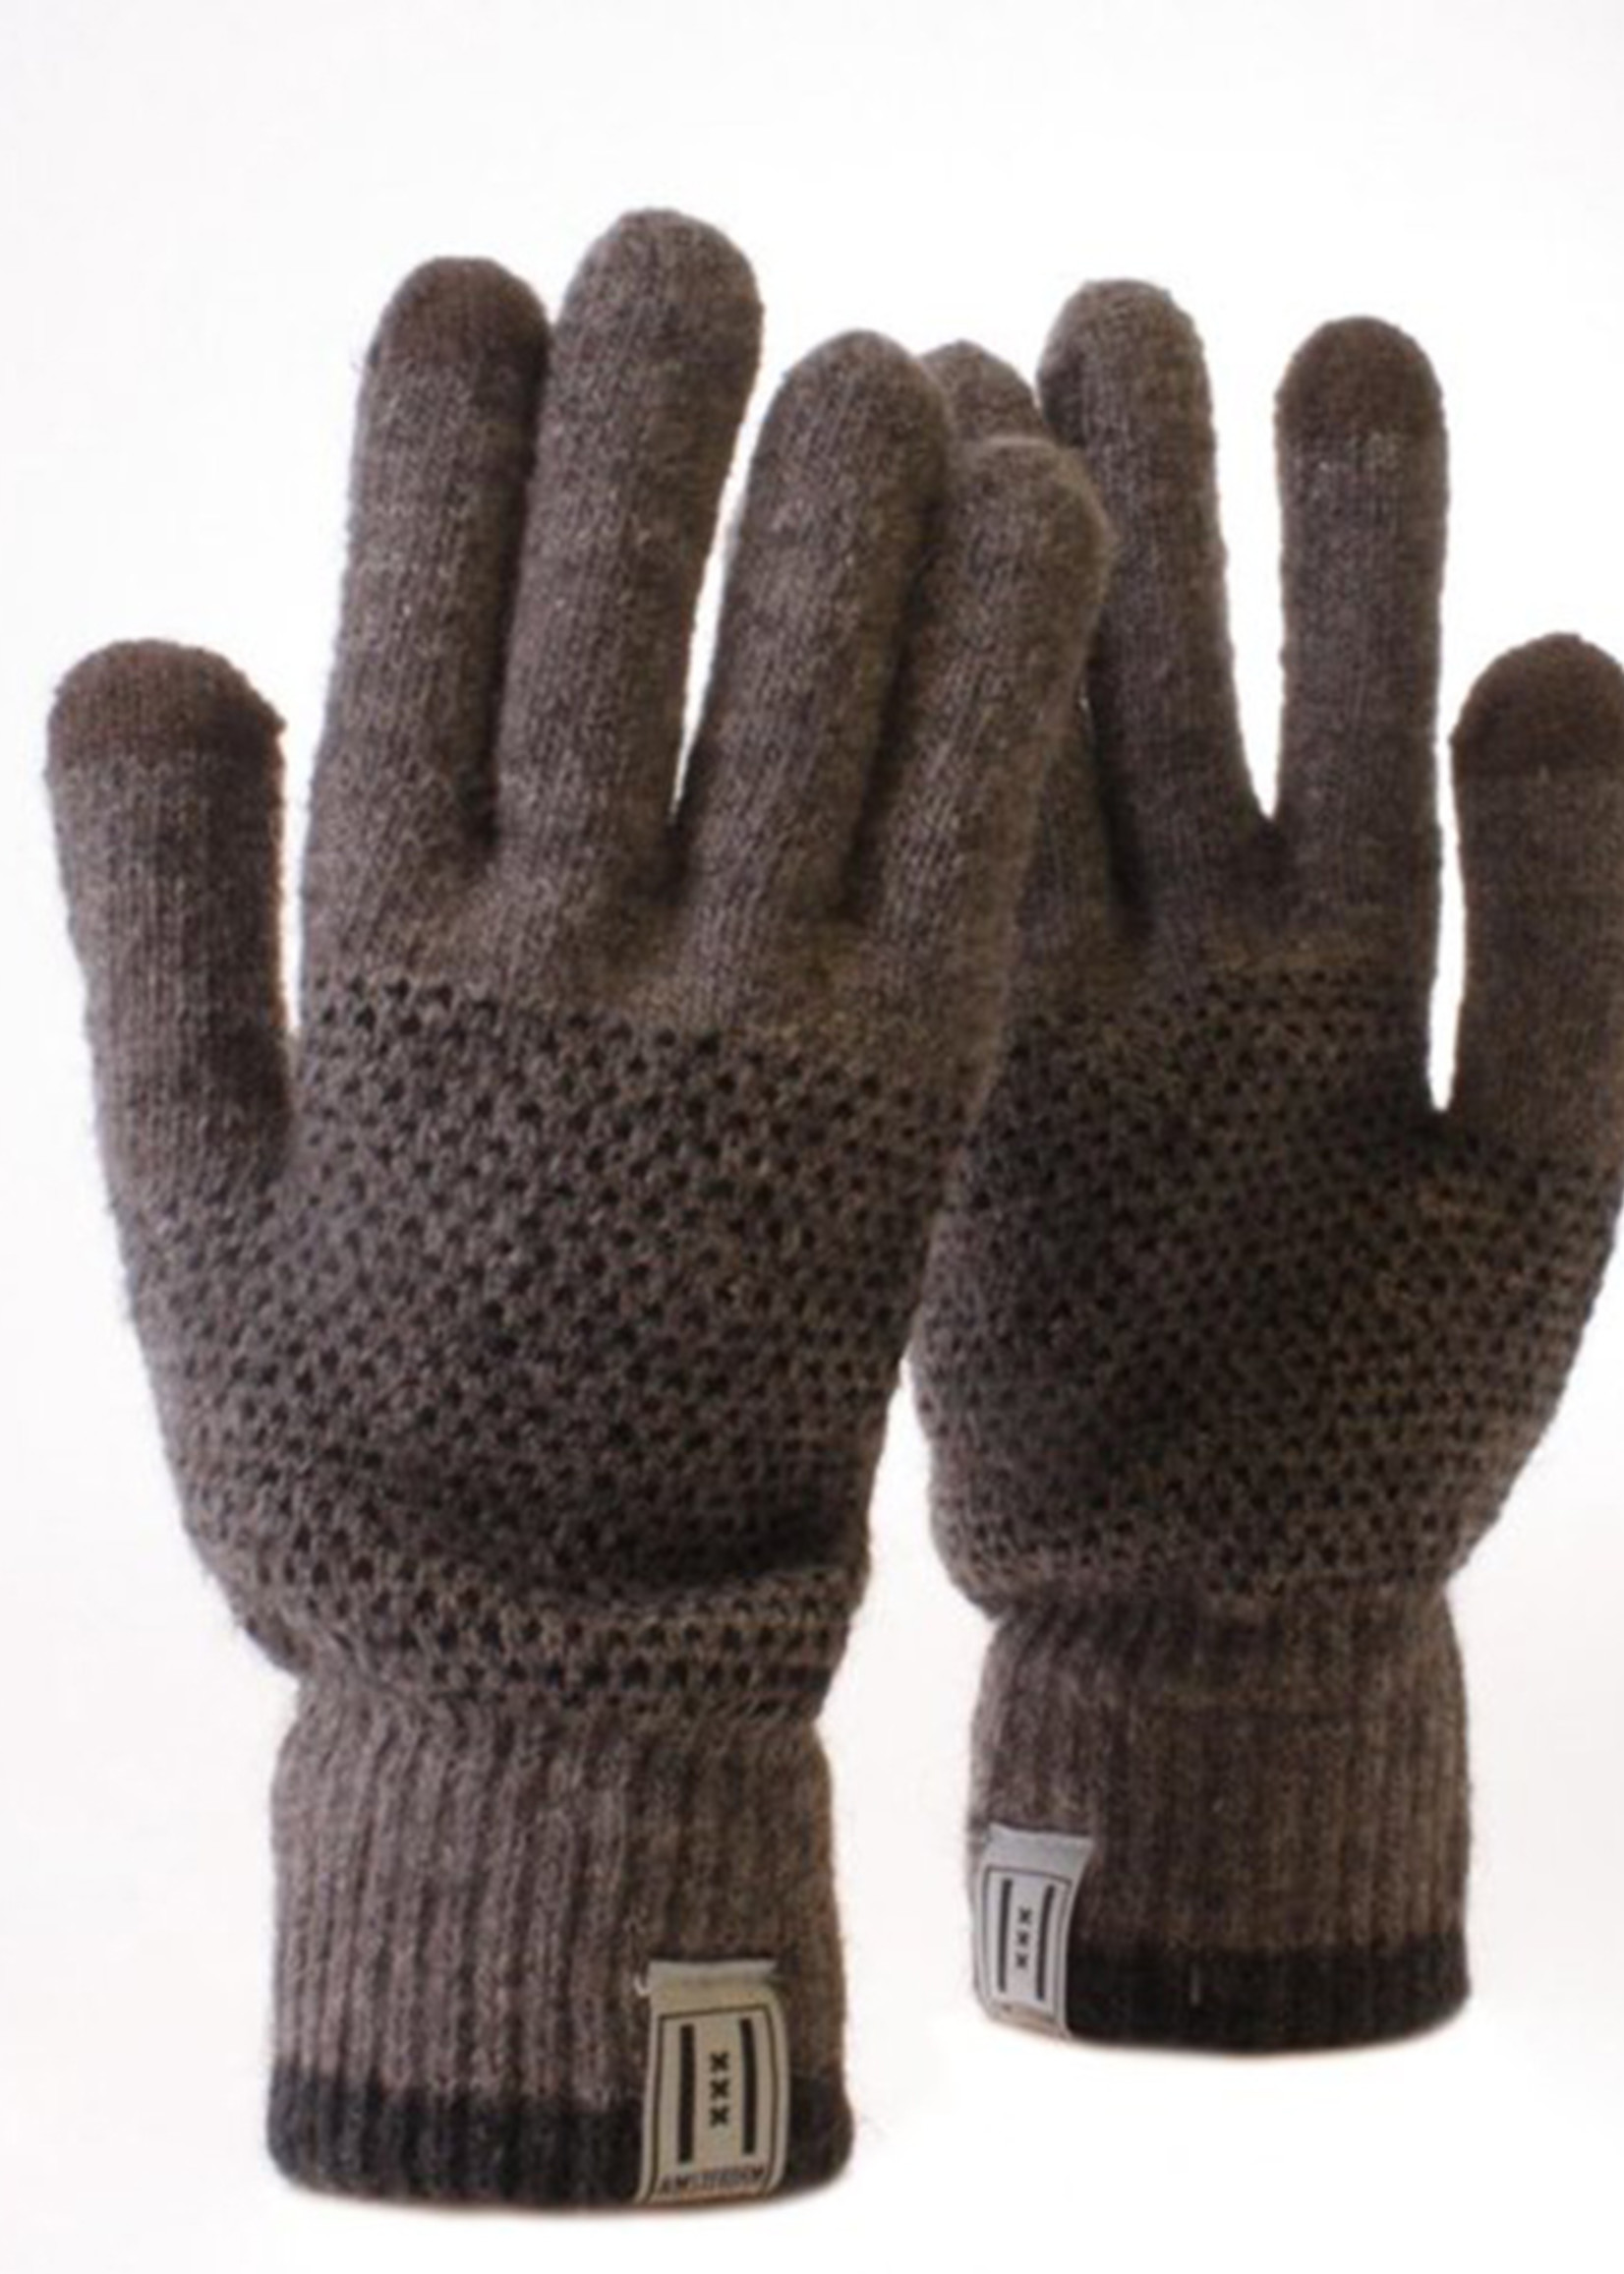 Gloves - Brown - Mobile Fingertips